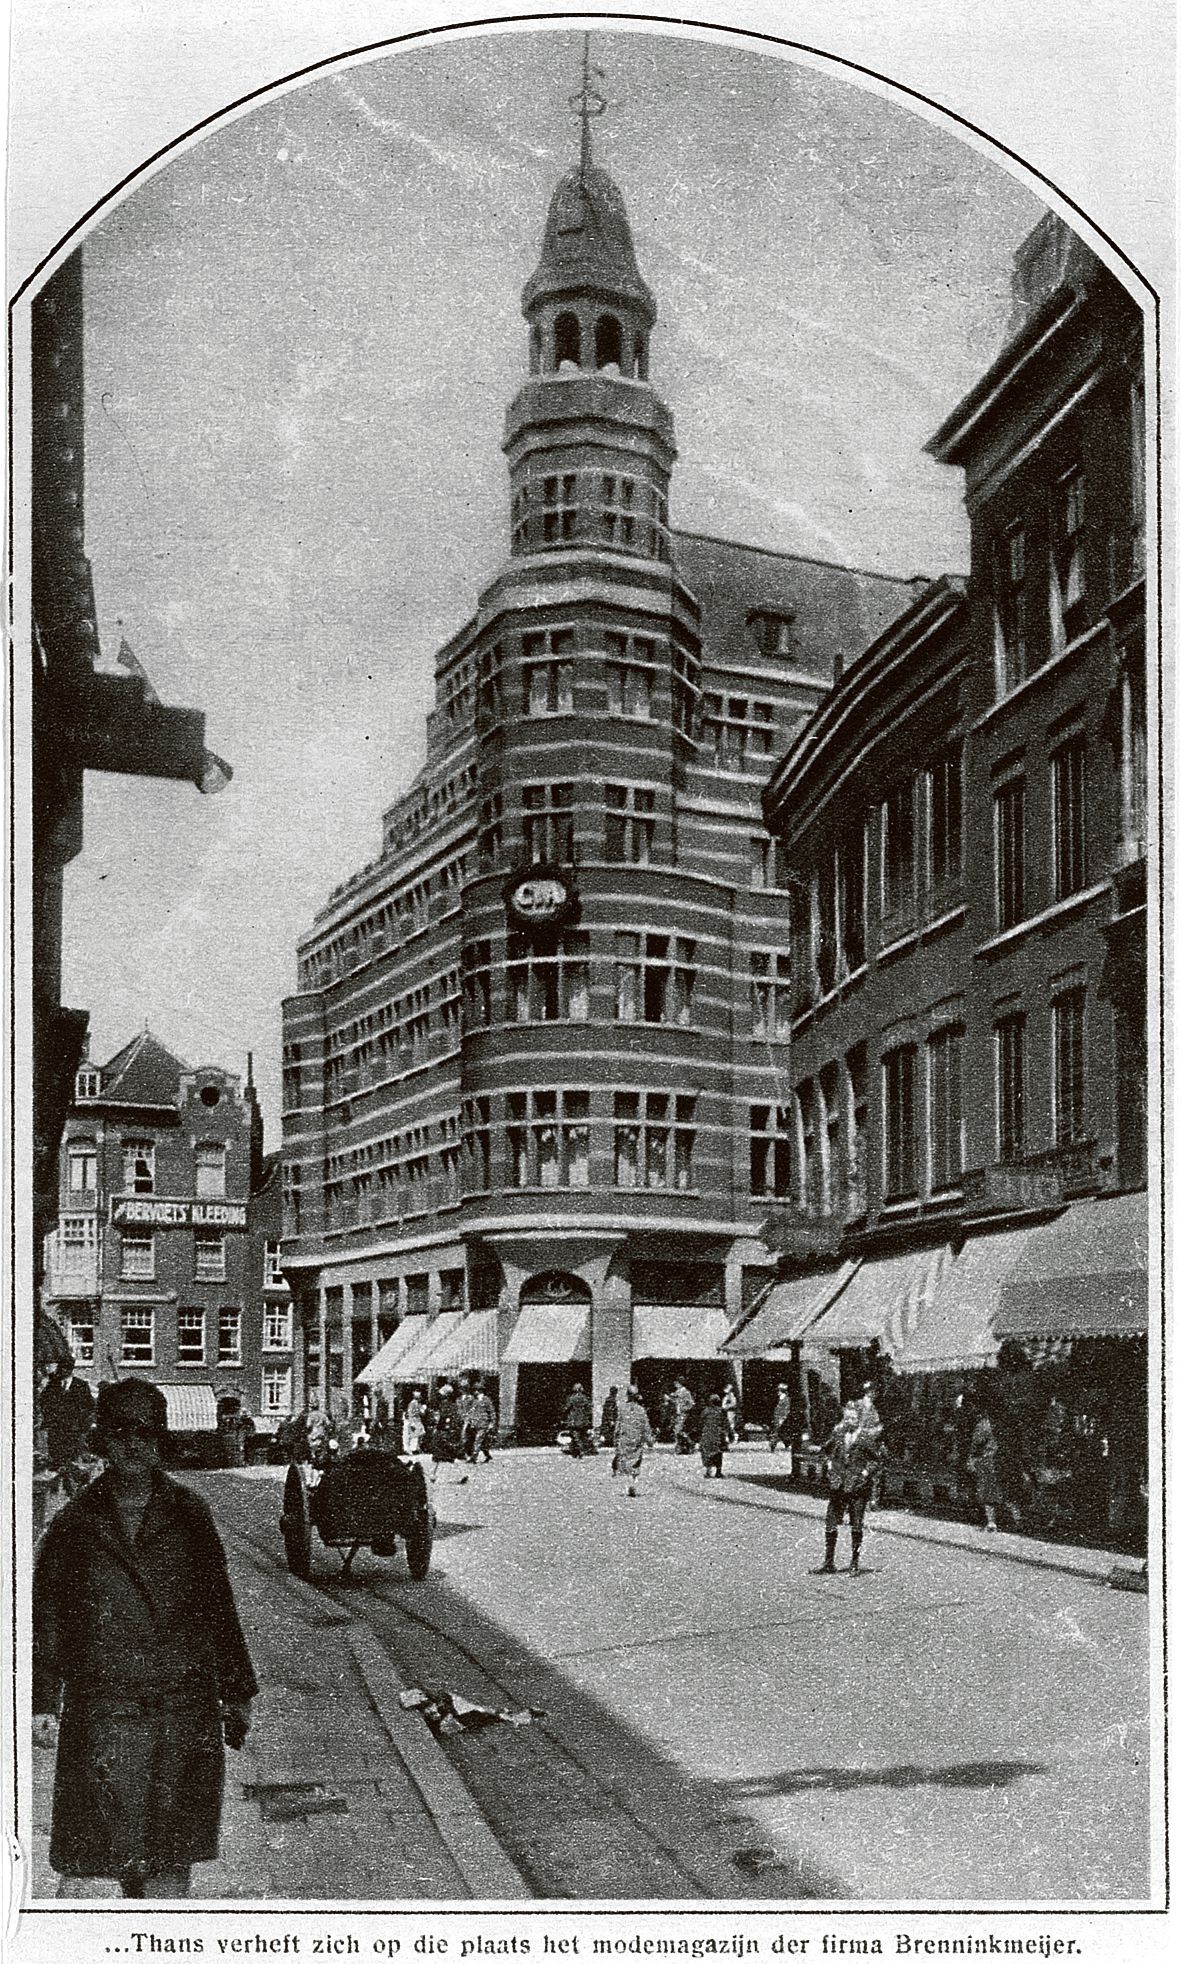 Winkelend zaterdags publiek in de Hoogstraat ter hoogte van de Vlasmarkt, Rotterdam ca 1935.